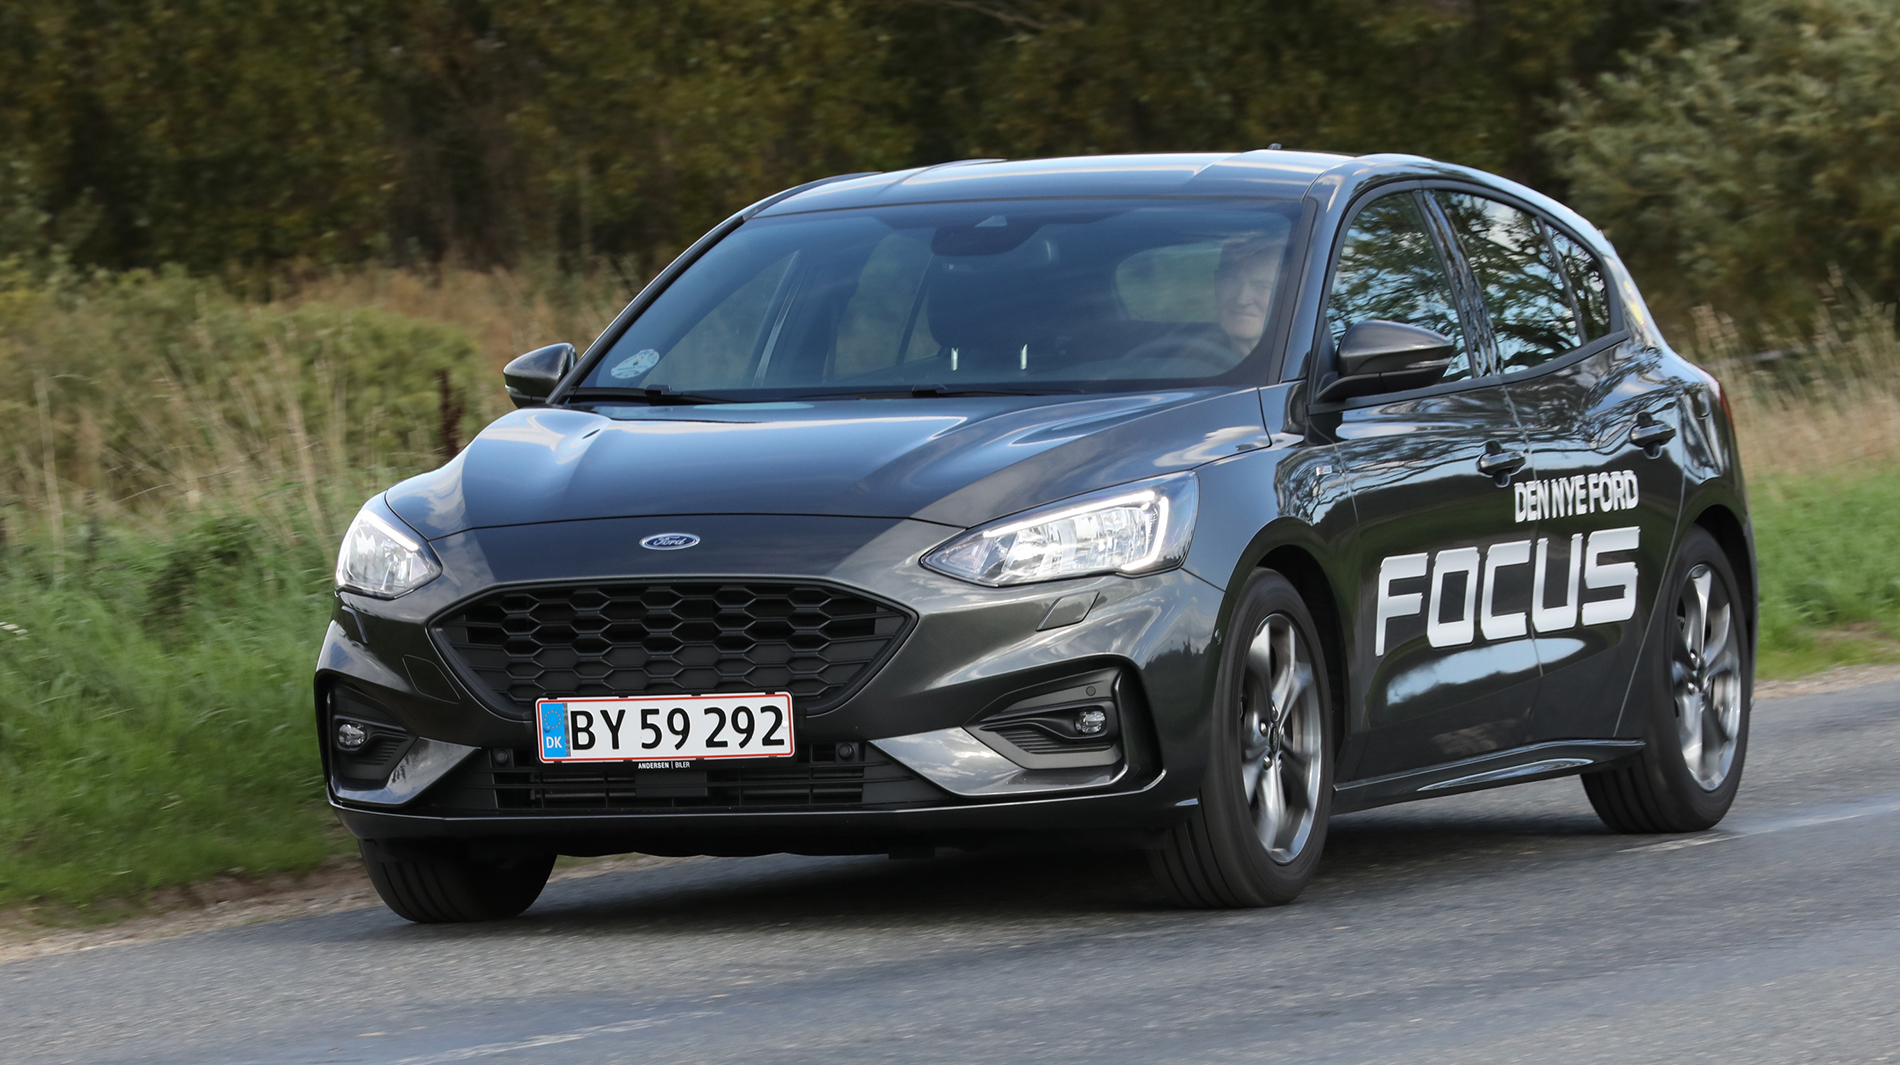 Ford Focus med god skærm og flot plads. Læs testen nu